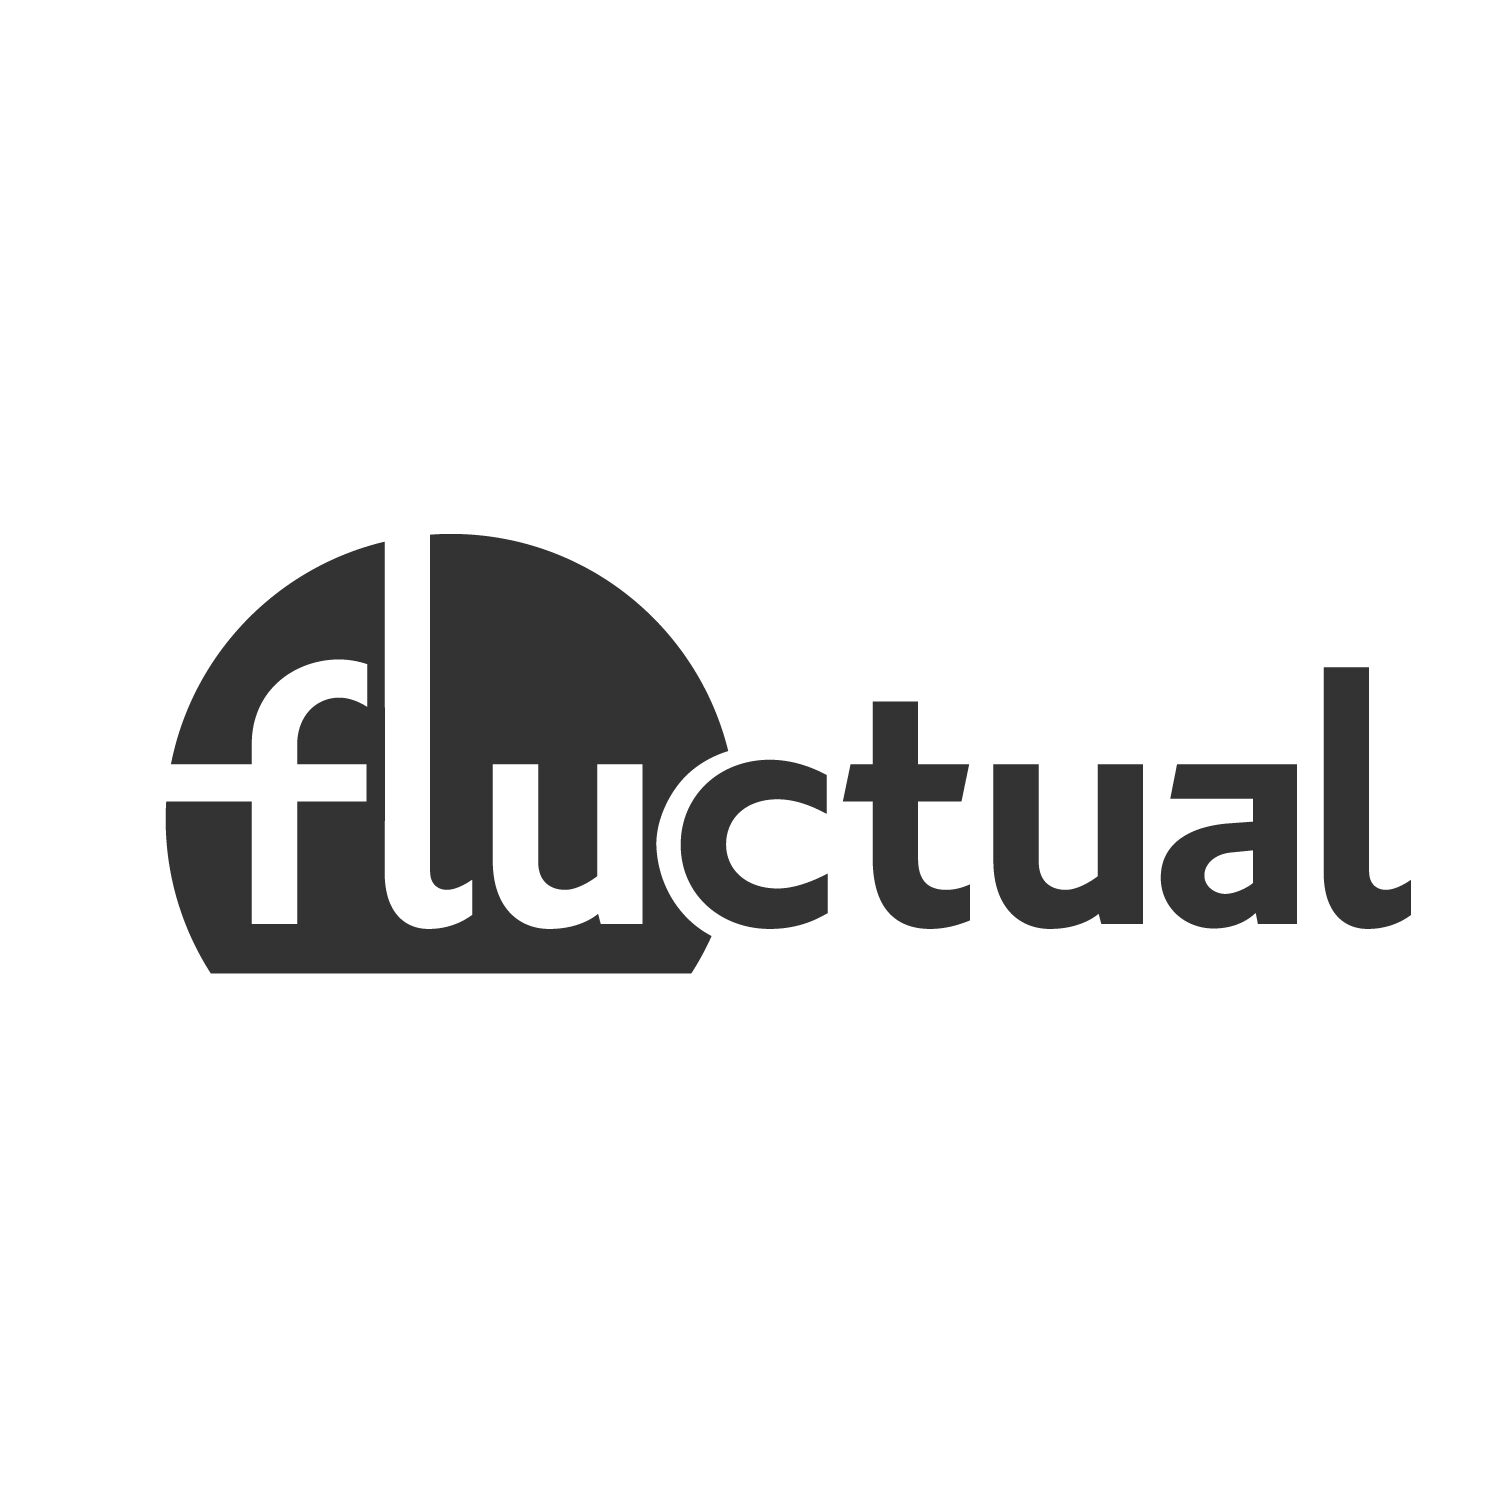 La Fluctual